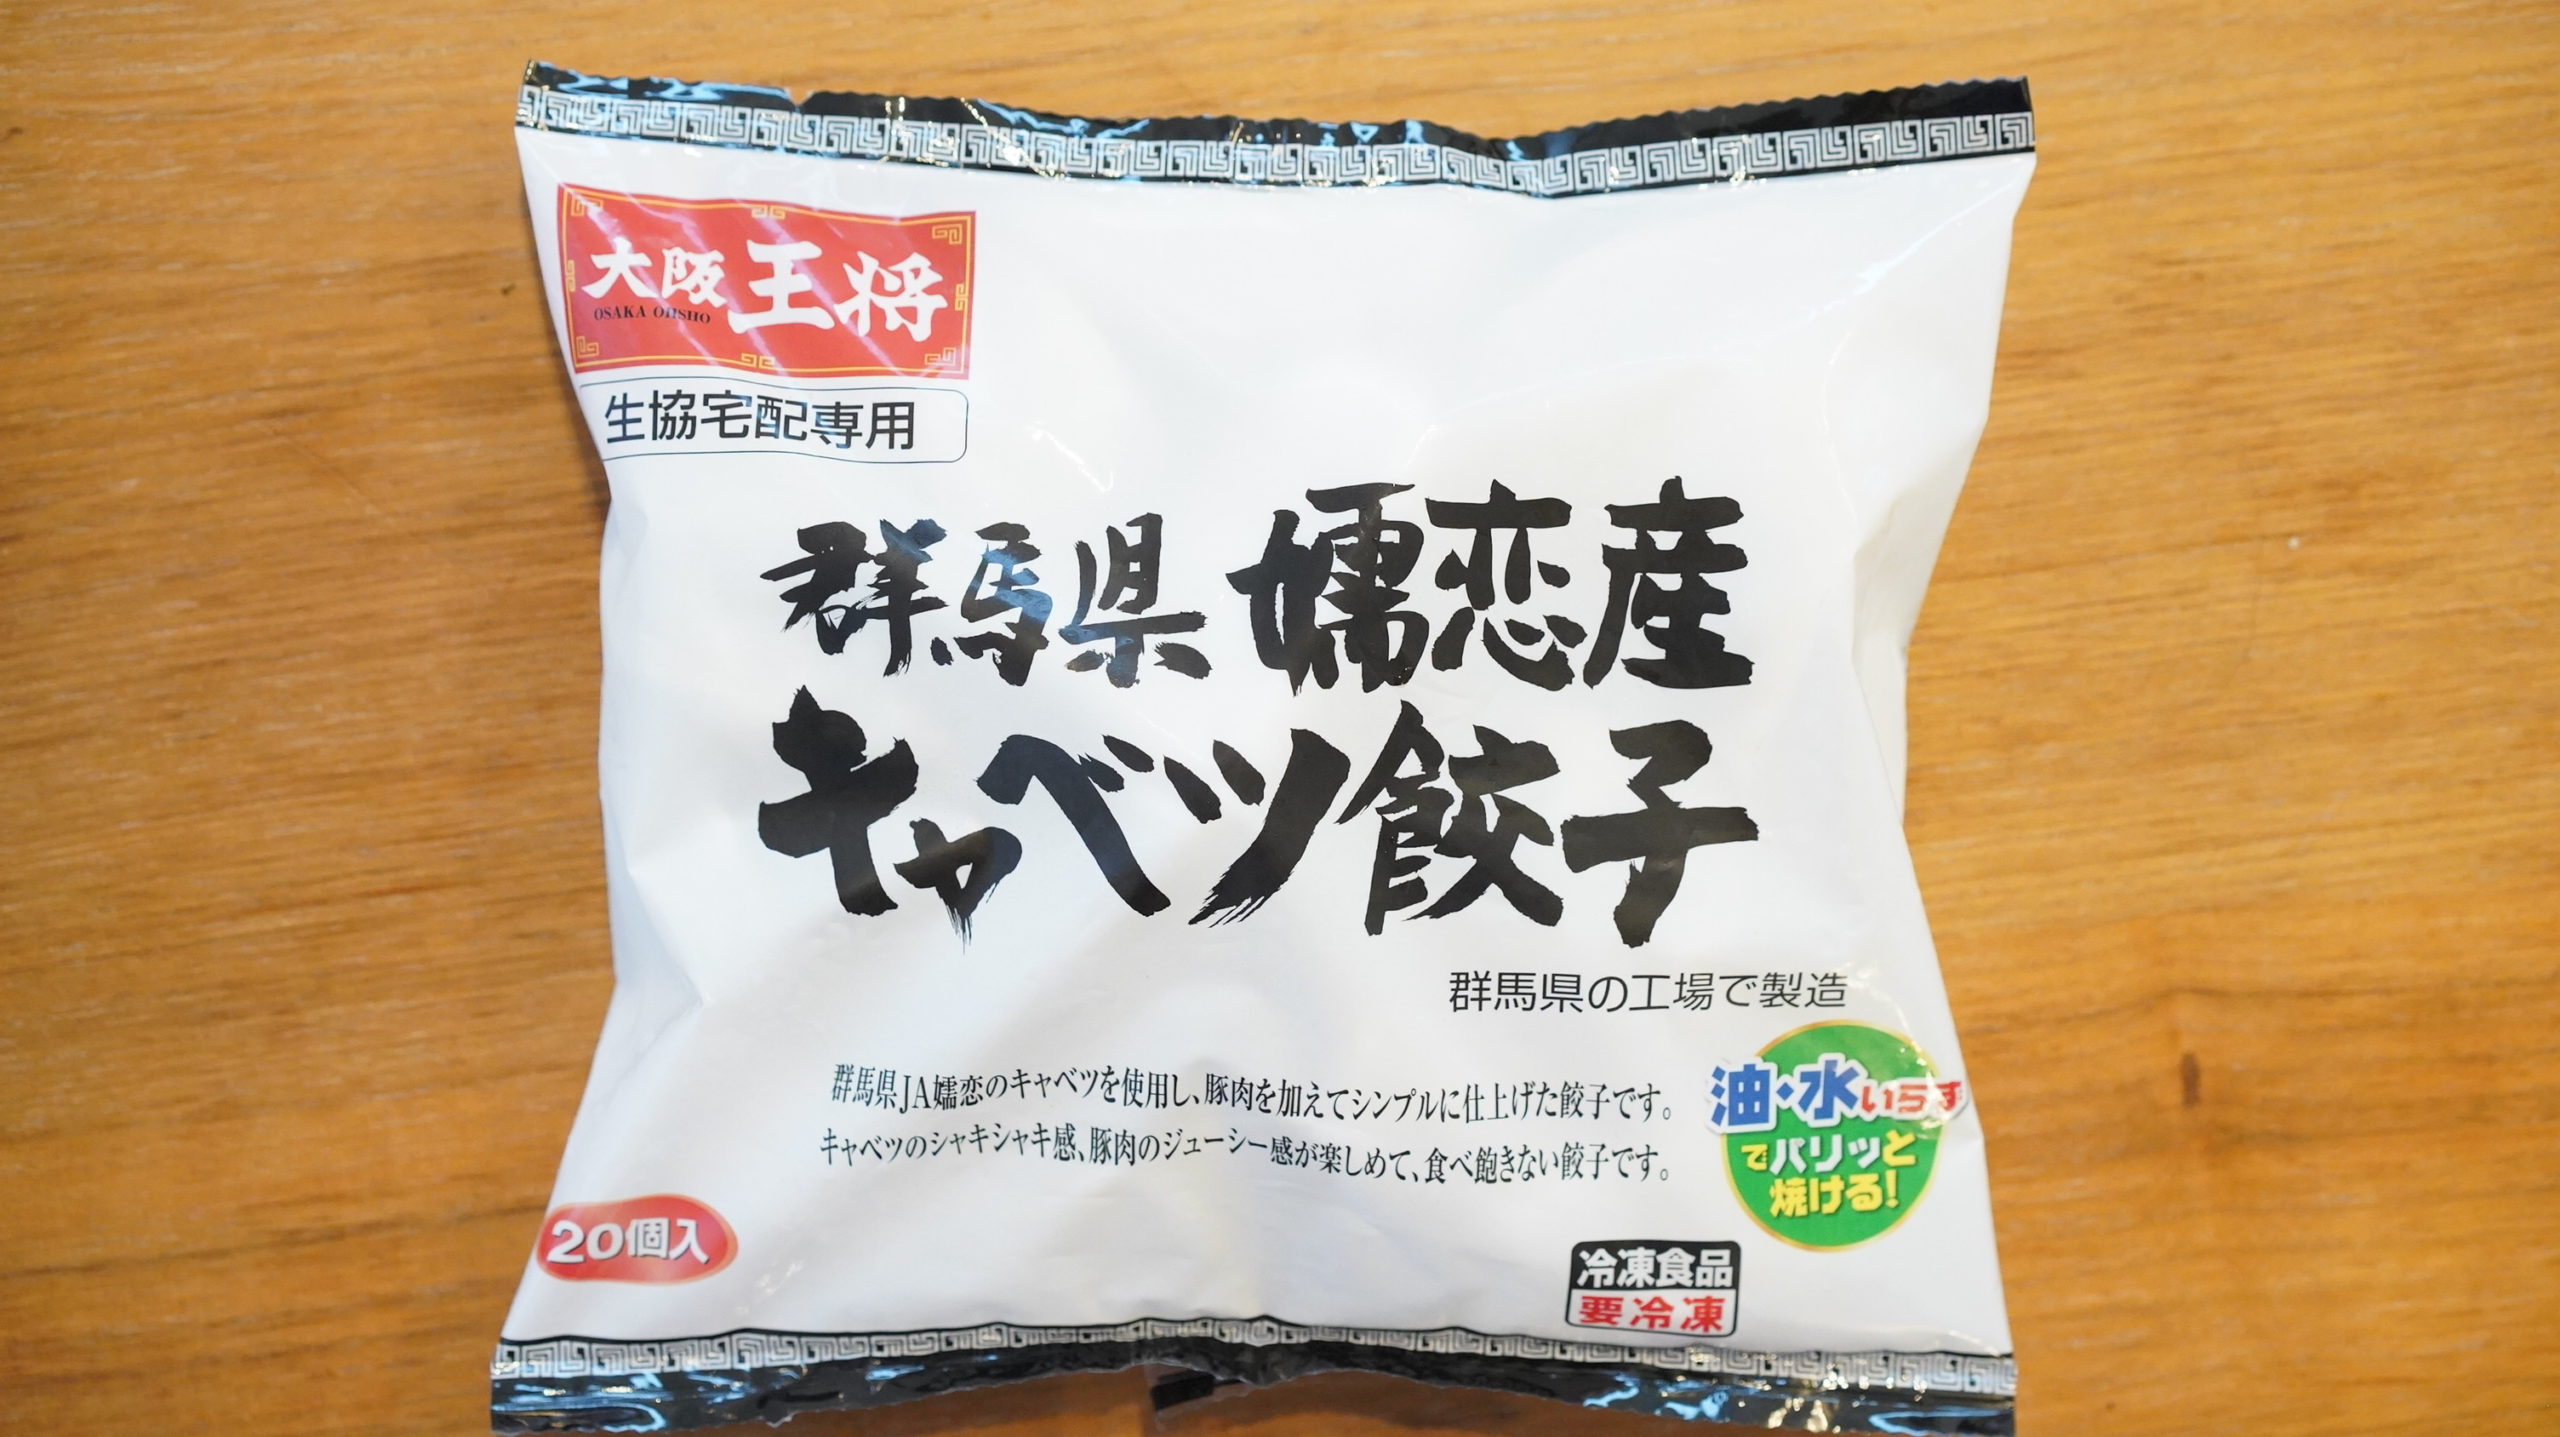 生協coop宅配の冷凍食品「群馬県嬬恋産キャベツ餃子」のパッケージ写真